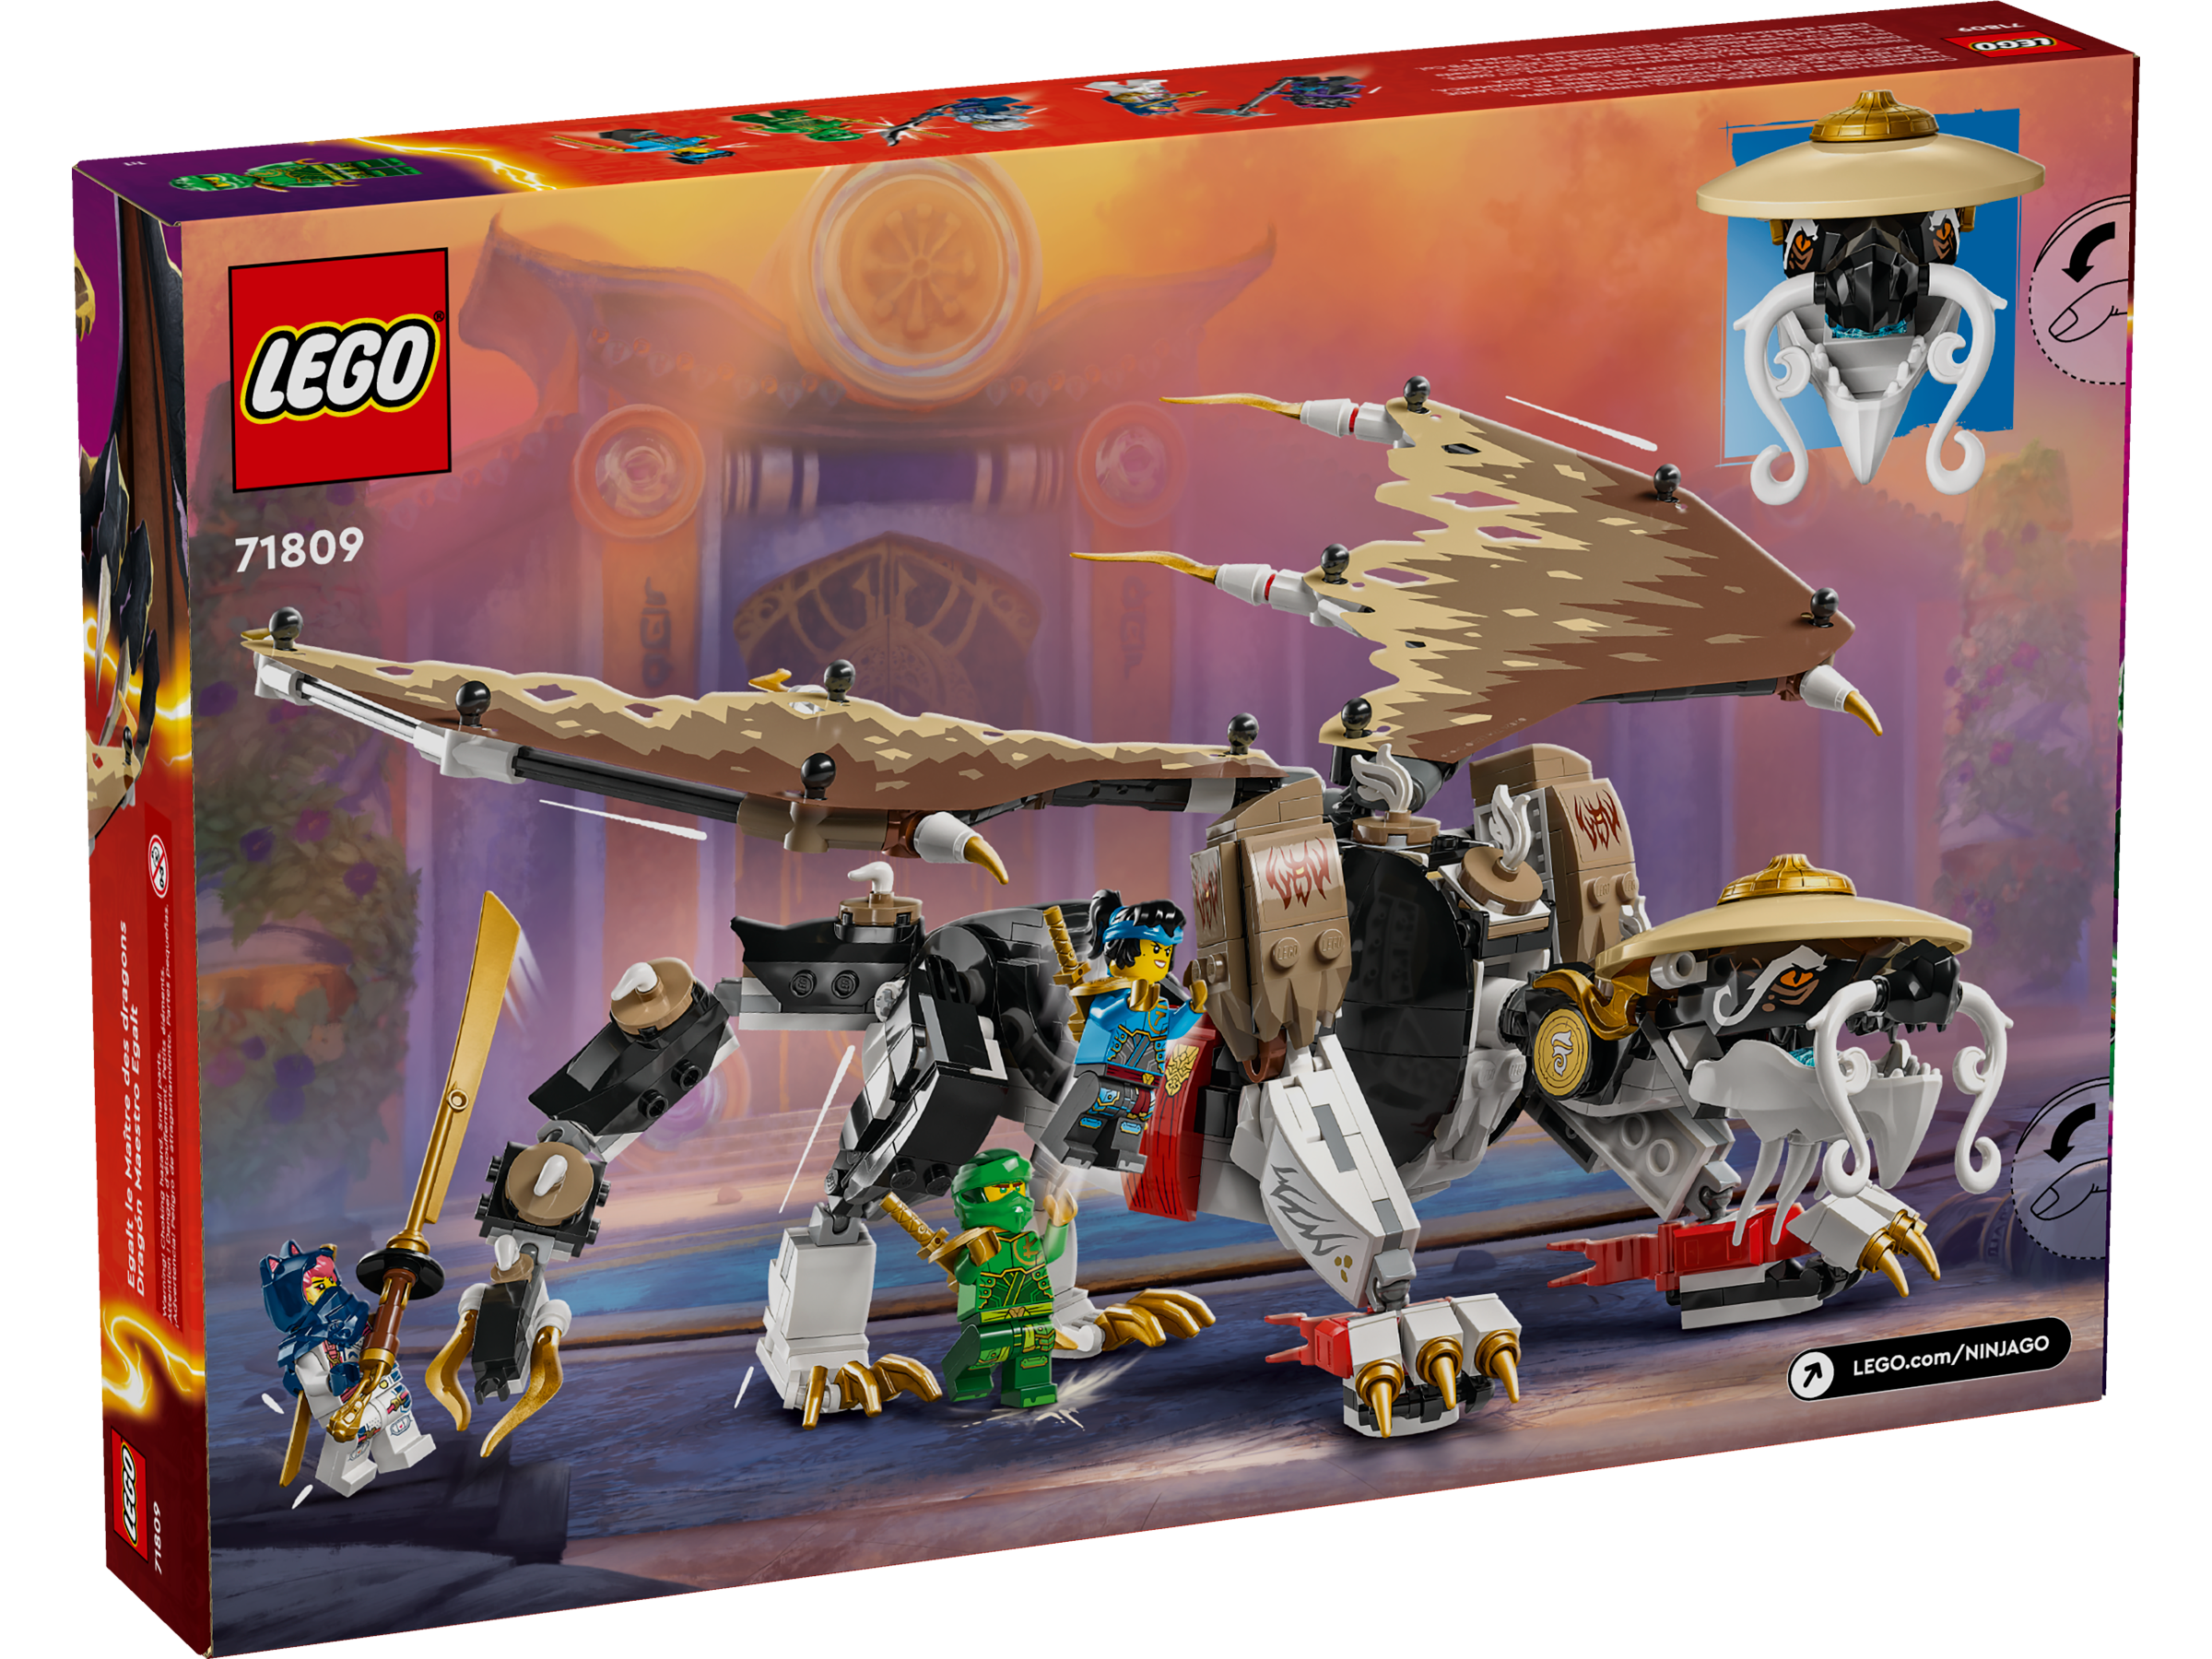 LEGO® Ninjago Dragon's Rising Egalt The Master Dragon Building Set